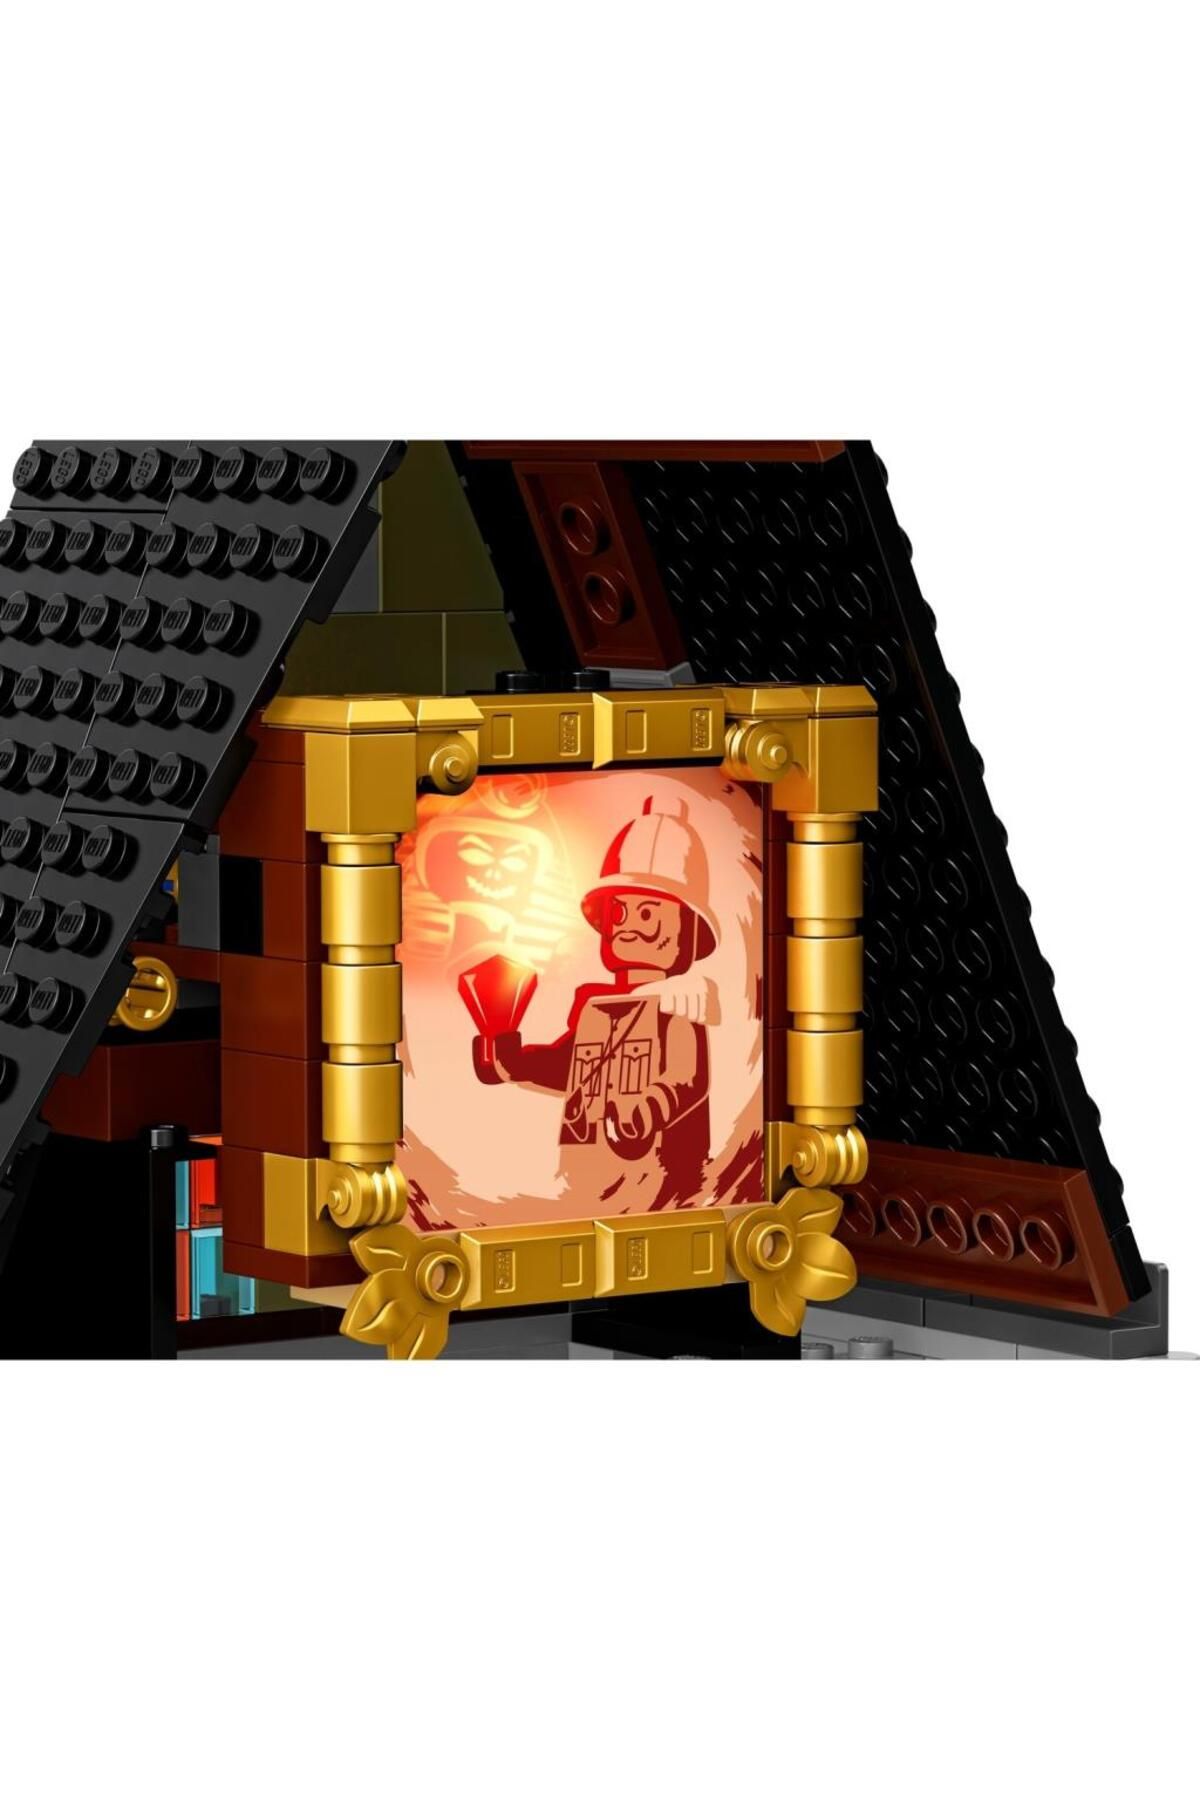 LEGO لگو متخصص خالق 10273 خانه خالی از سکنه